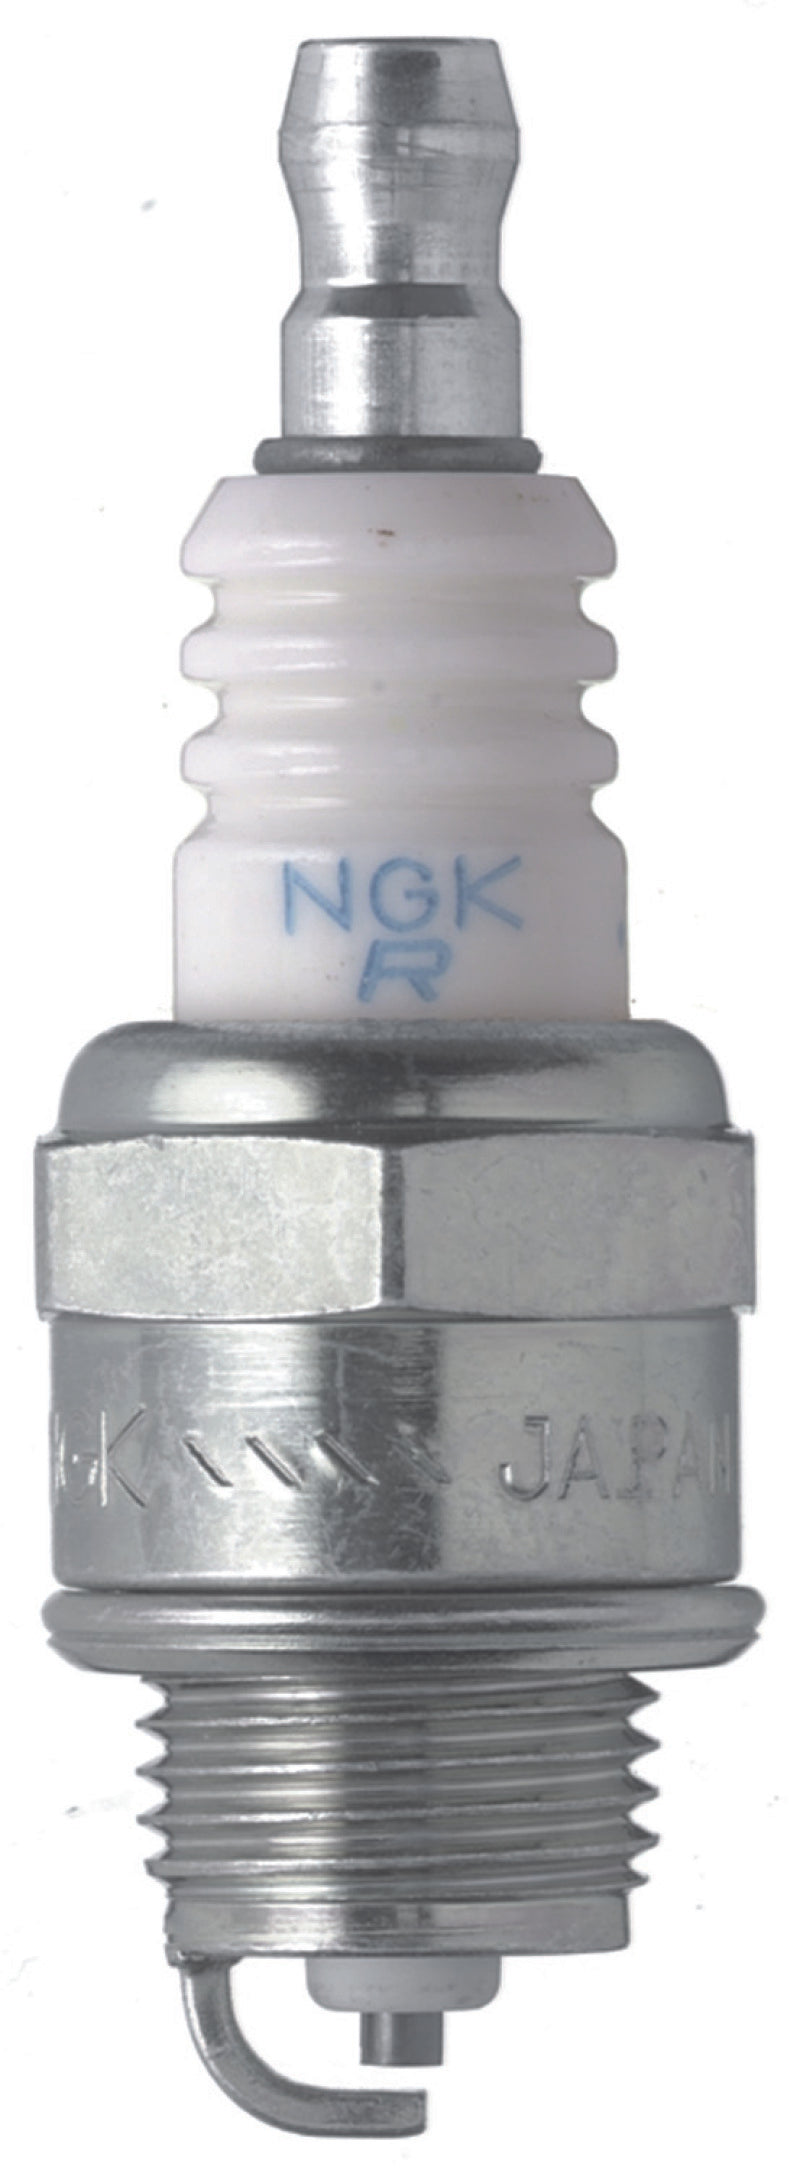 NGK Standard Spark Plug Box of 10 (BPMR4A-10)